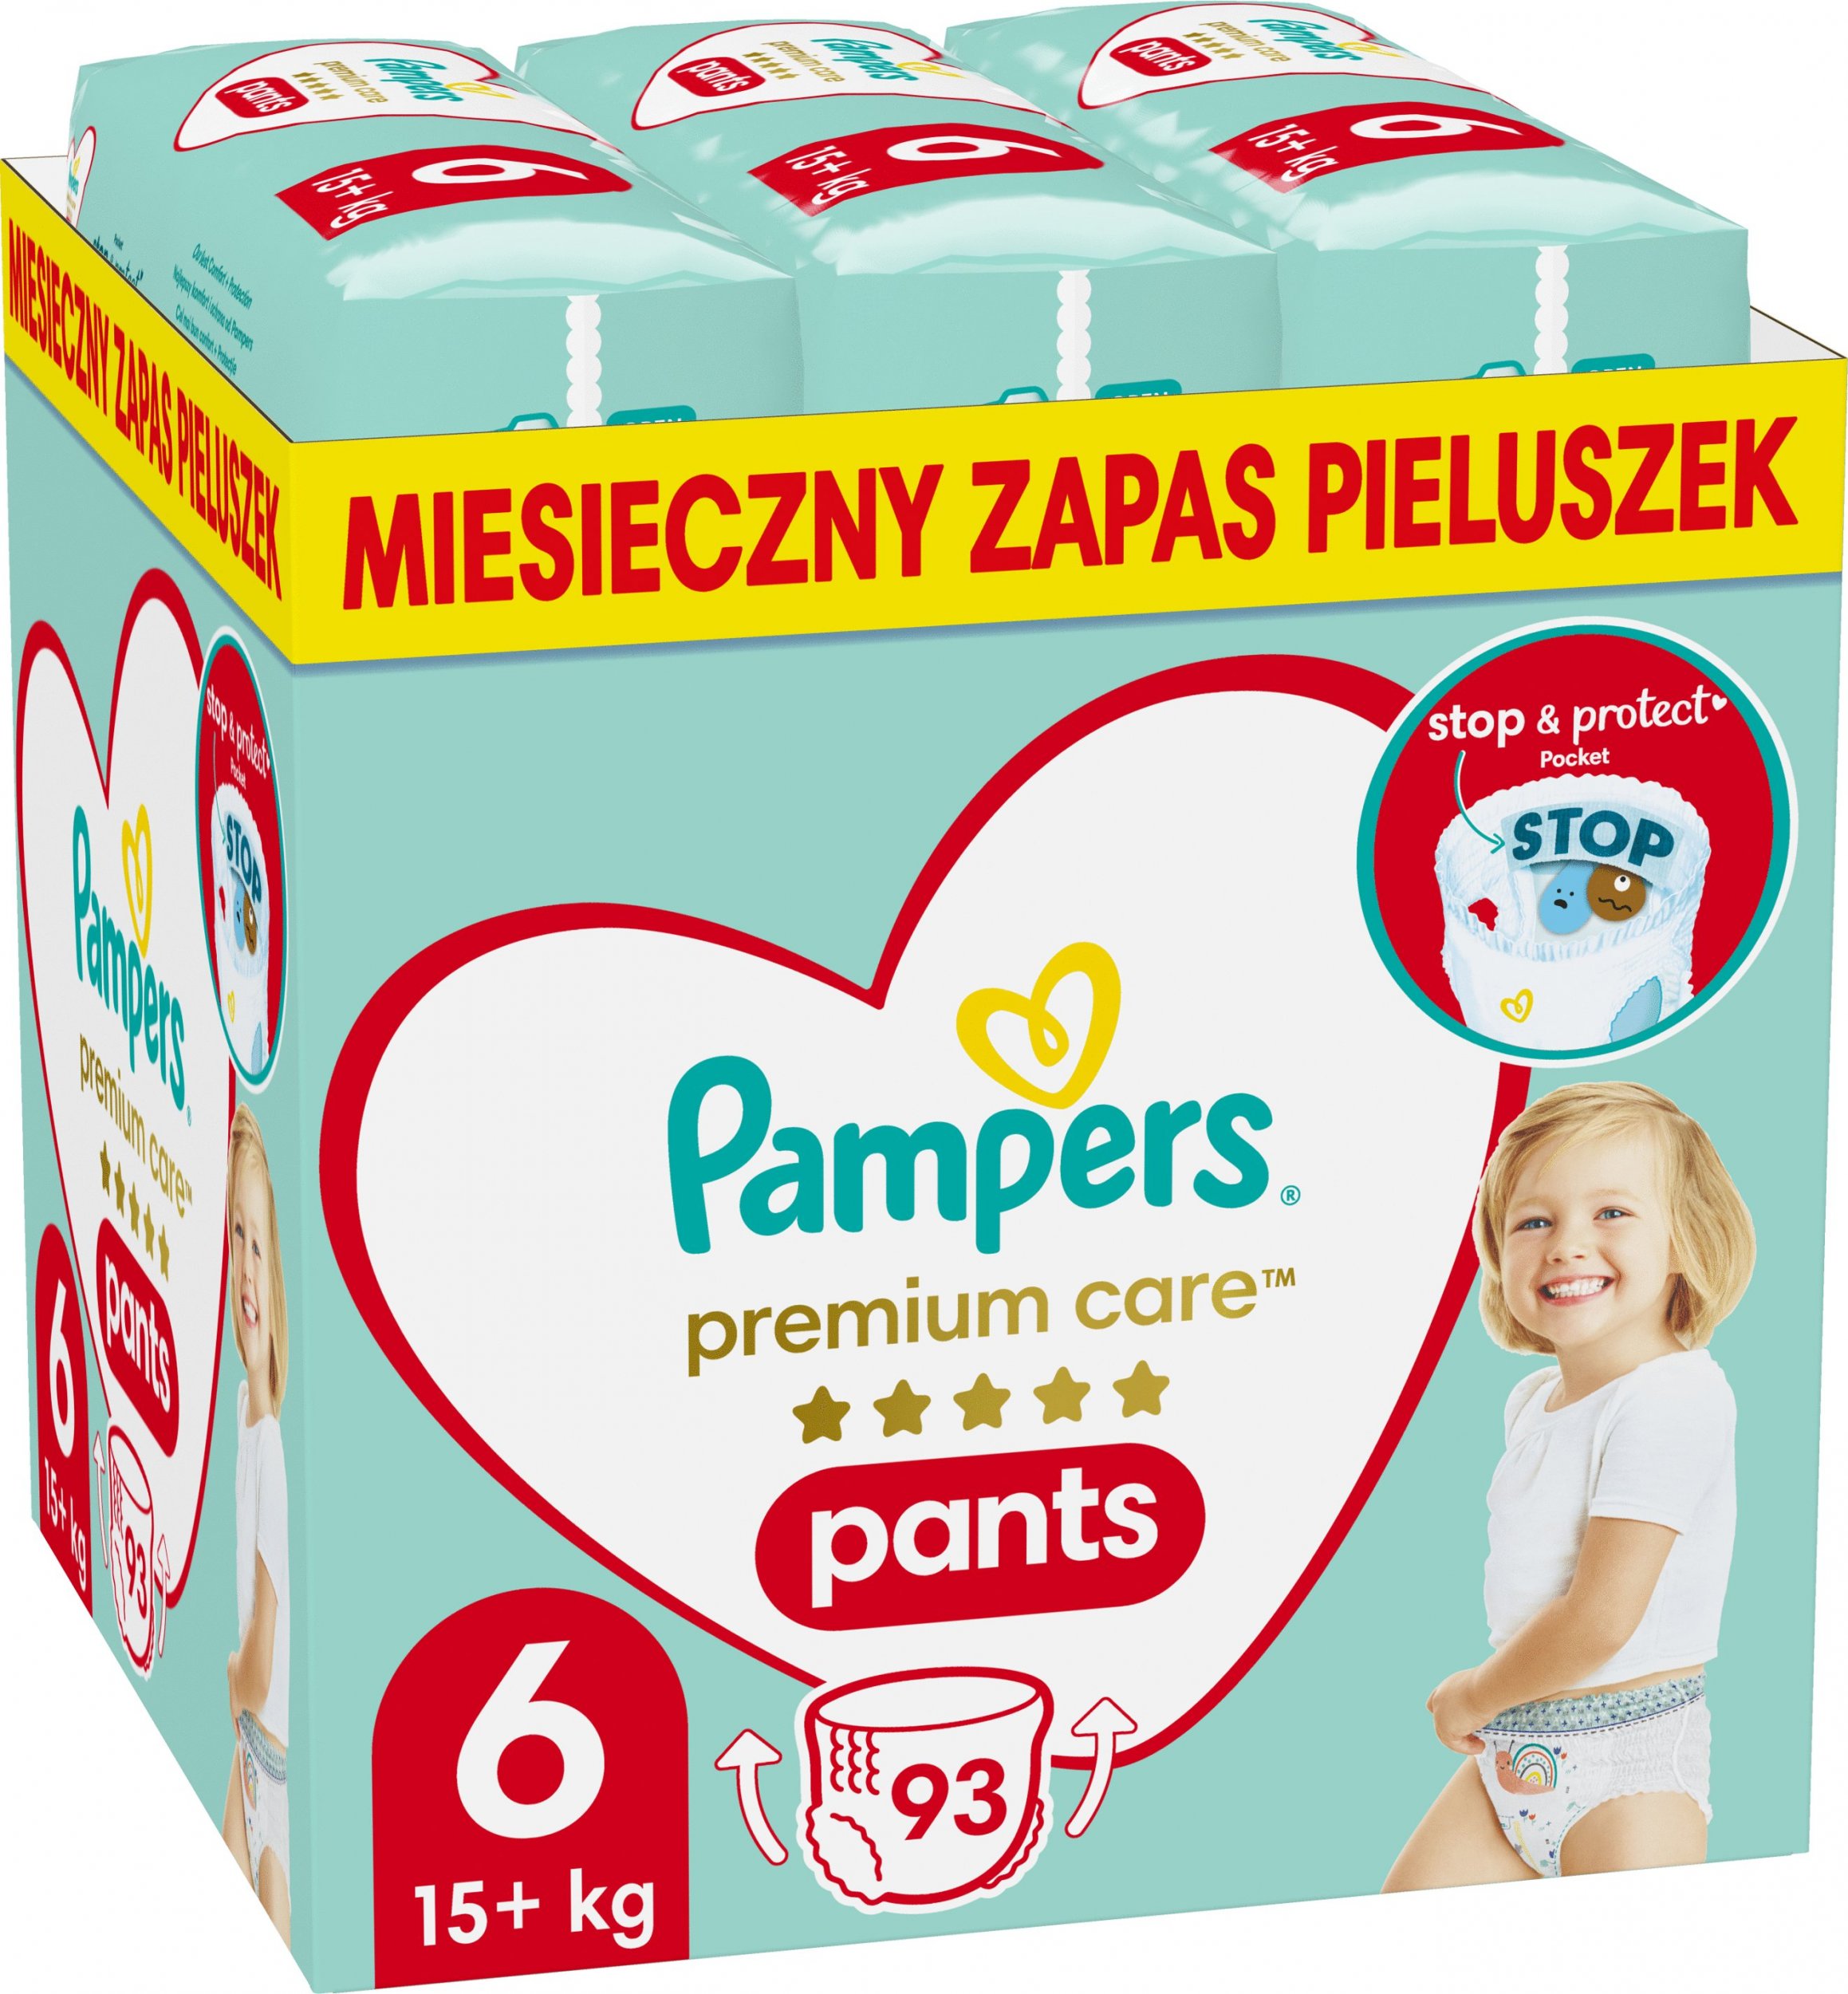 Pieluszki Pampers Pants Premium Care 6, 15+ kg, 93 szt.